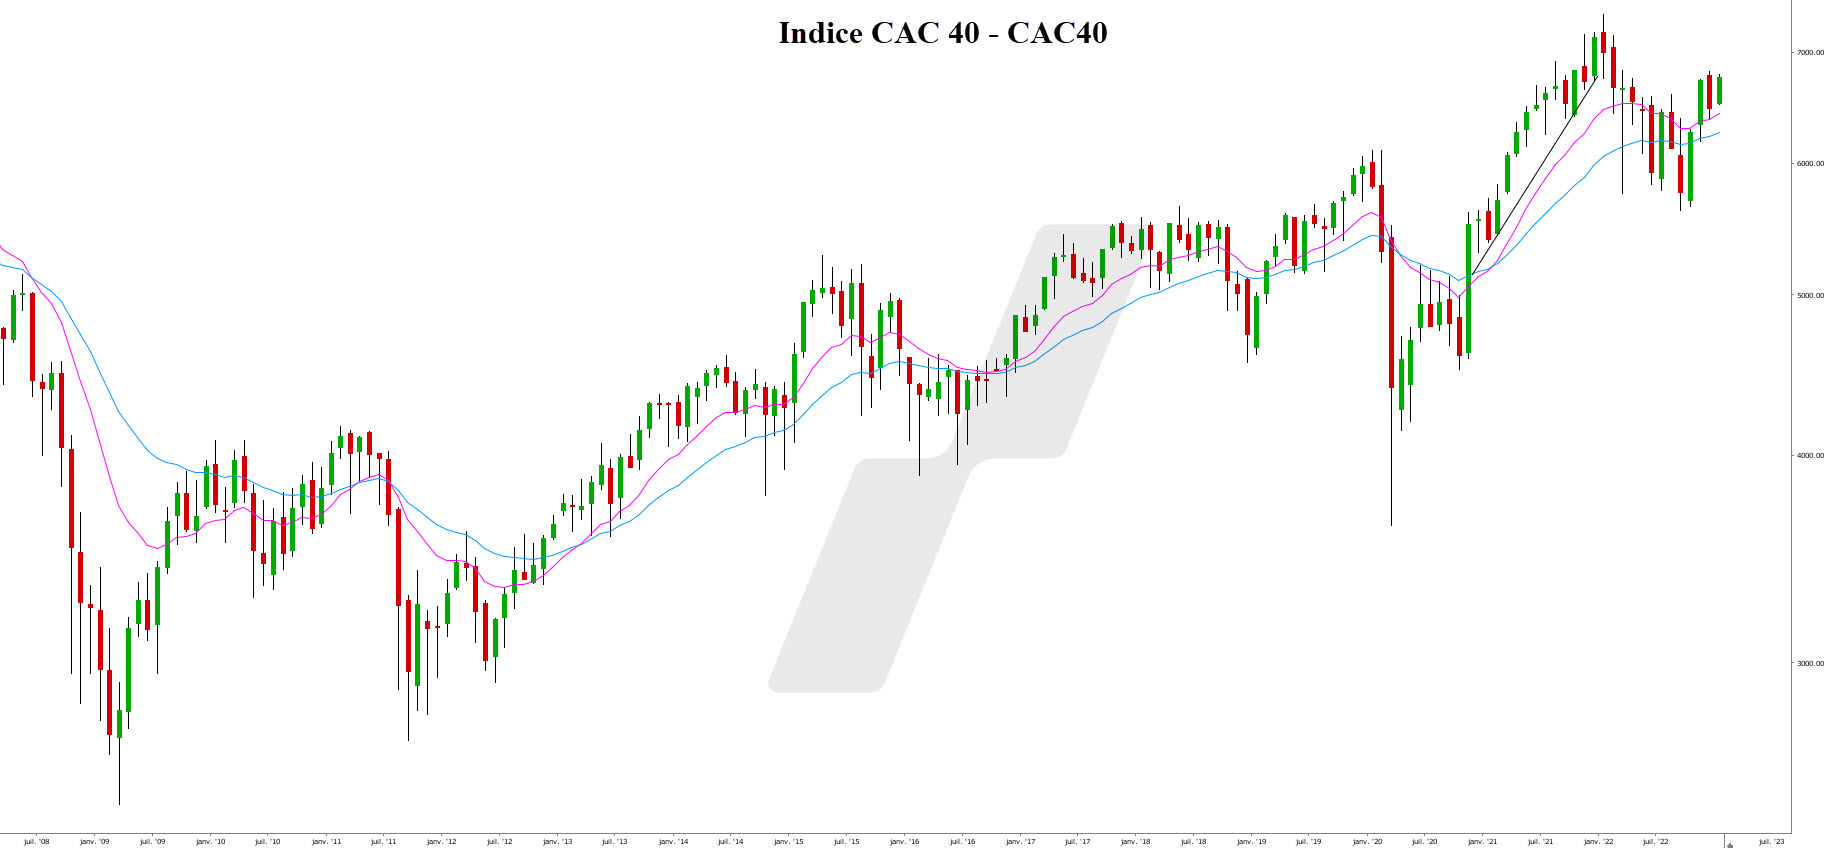 acheter des actions en bourse - action bourse - graphique CAC